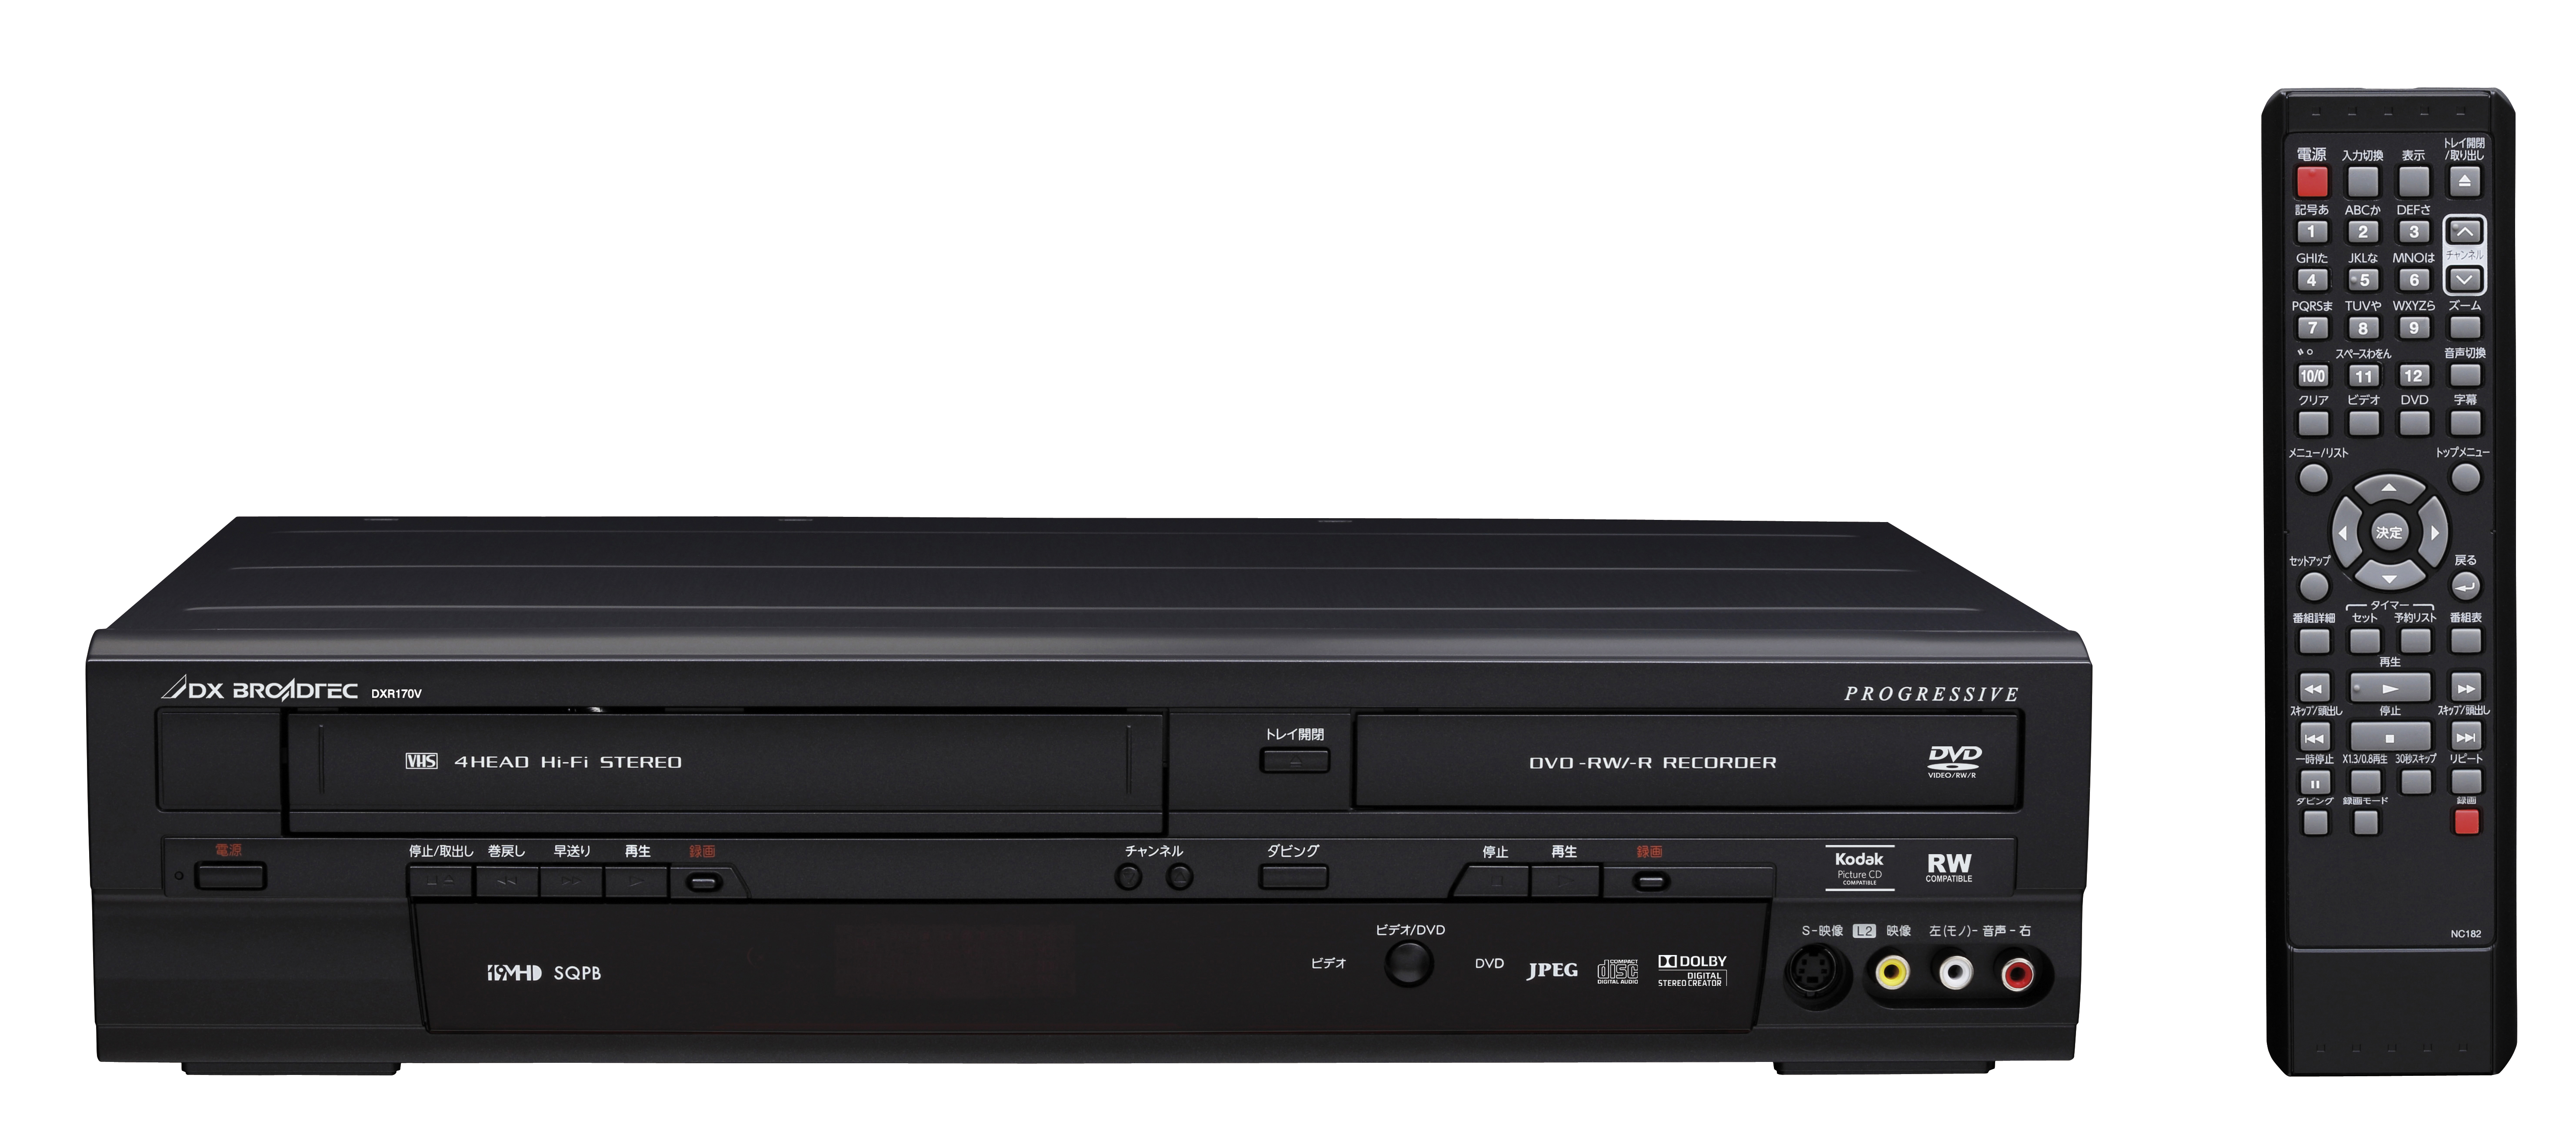 公式セール価格 DXアンテナ DXR160V 地デジチューナー内蔵ビデオ一体型DVDレコーダー DVDレコーダー